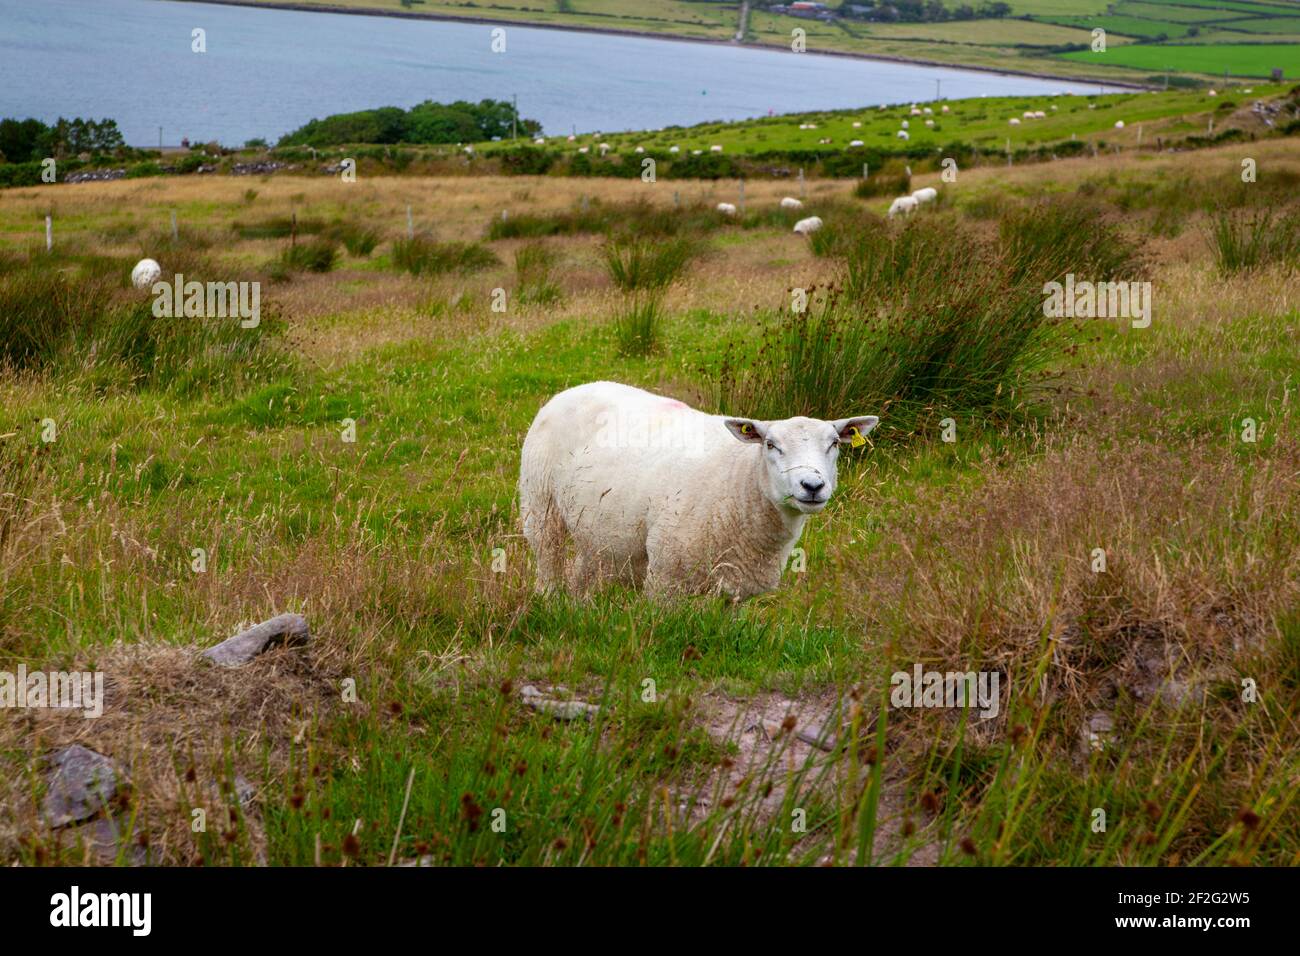 Un mouton en pâturage en Irlande Banque D'Images